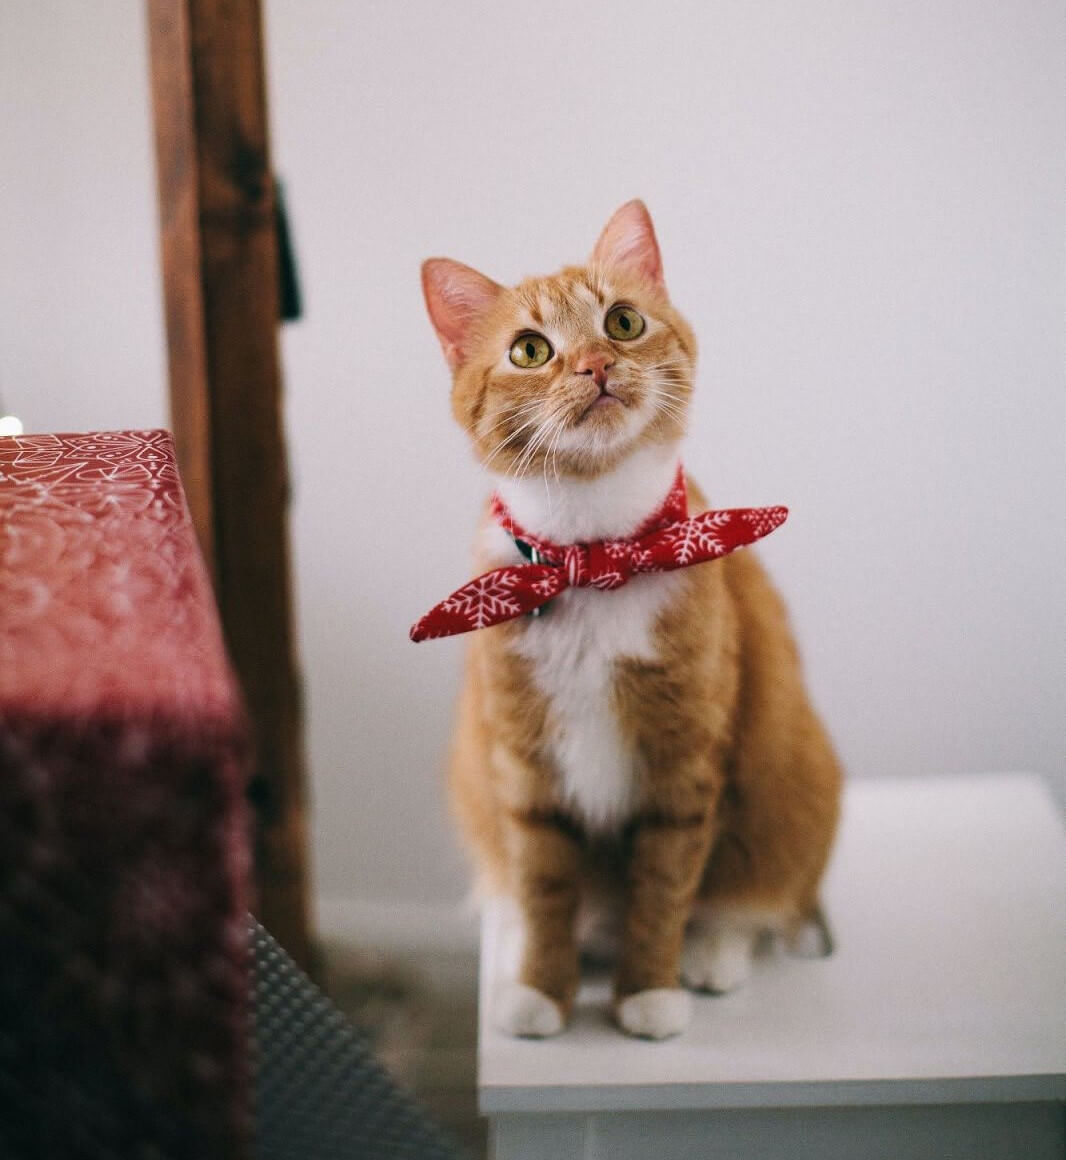 A cat in a red bandana.